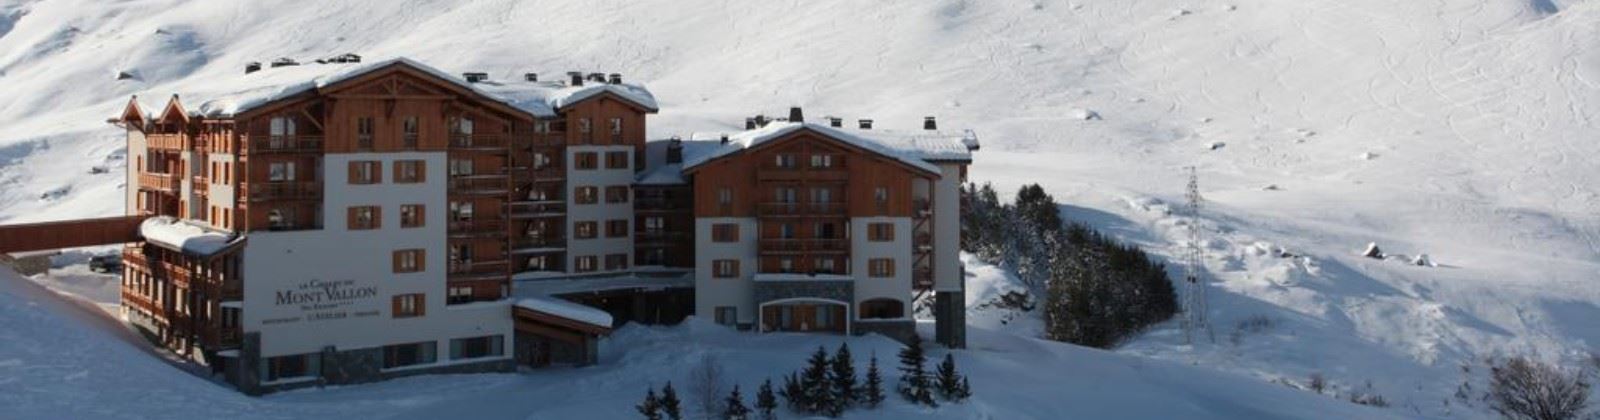 OLEVENE image - chalet-du-mont-vallon-spa-resort-olevene-restaurant-hotel-booking-meeting-